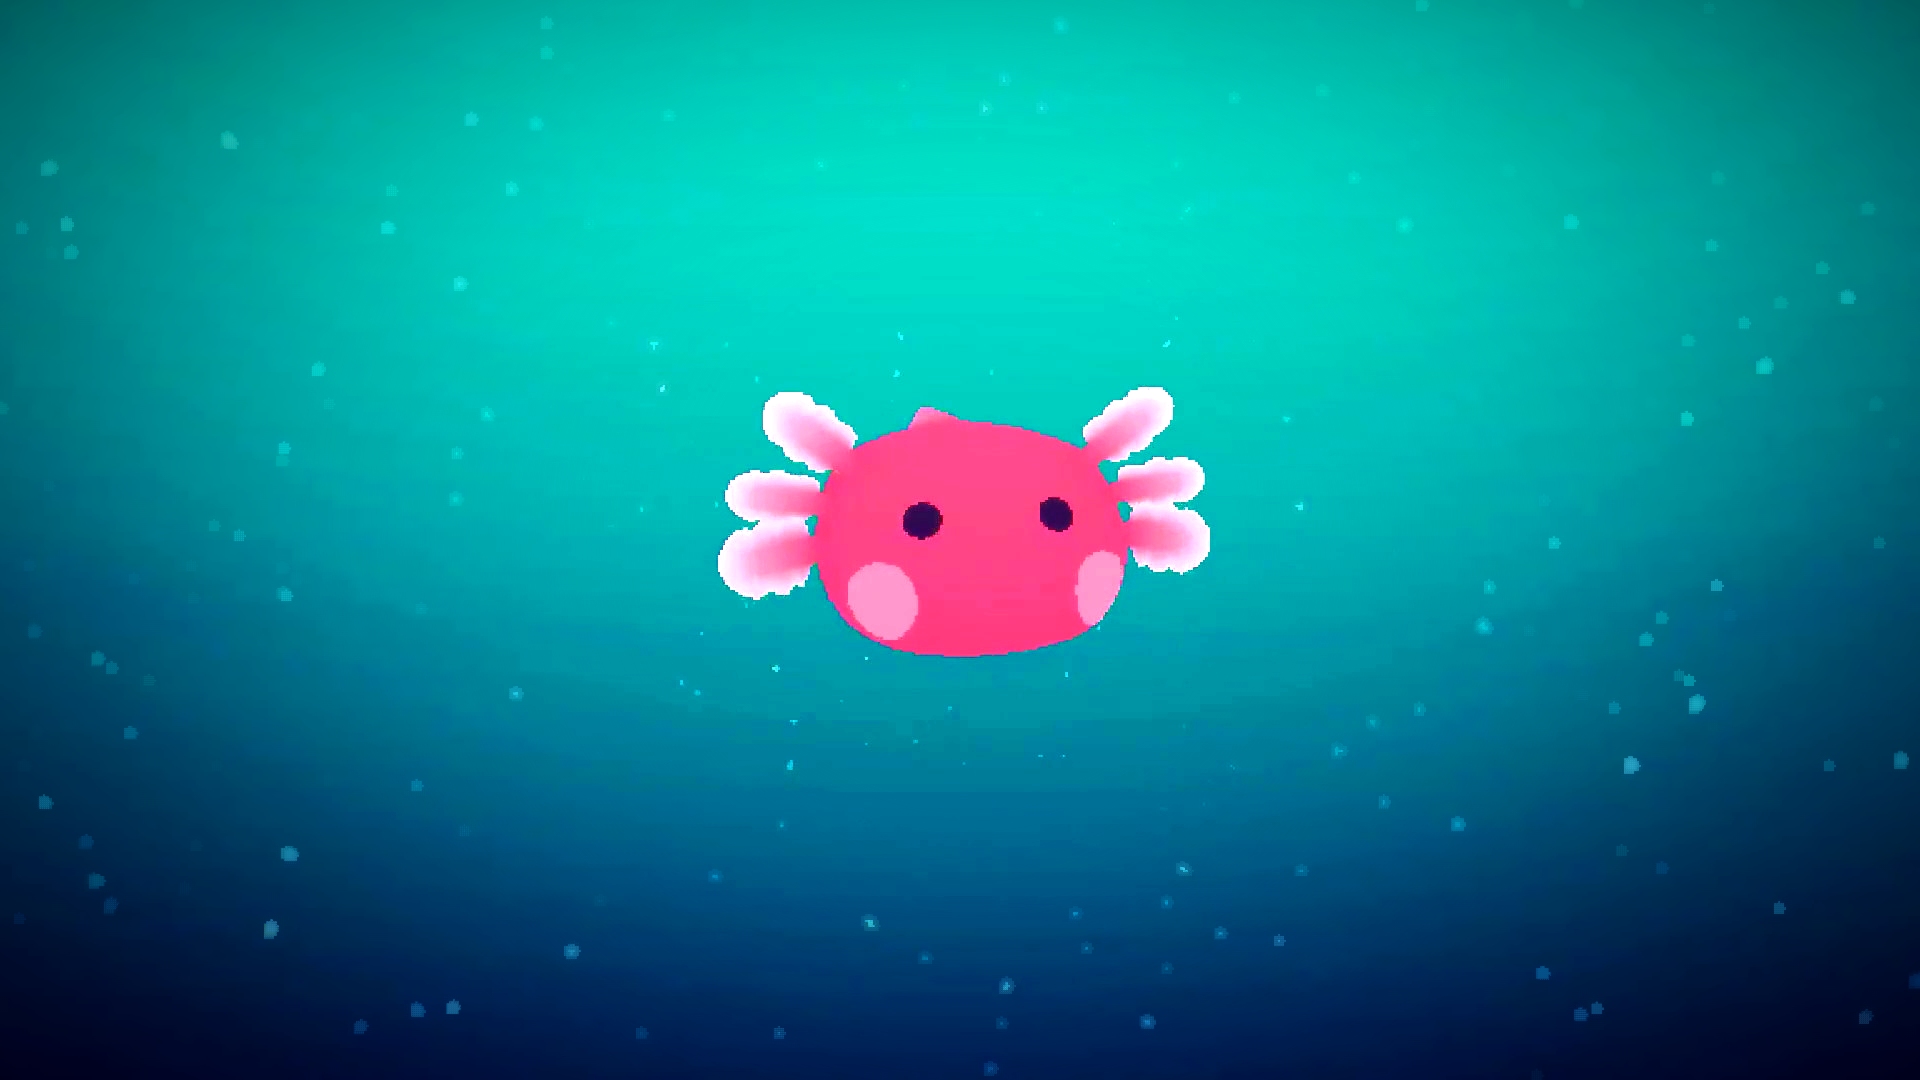 Cozy new Steam game lets you raise alien axolotls